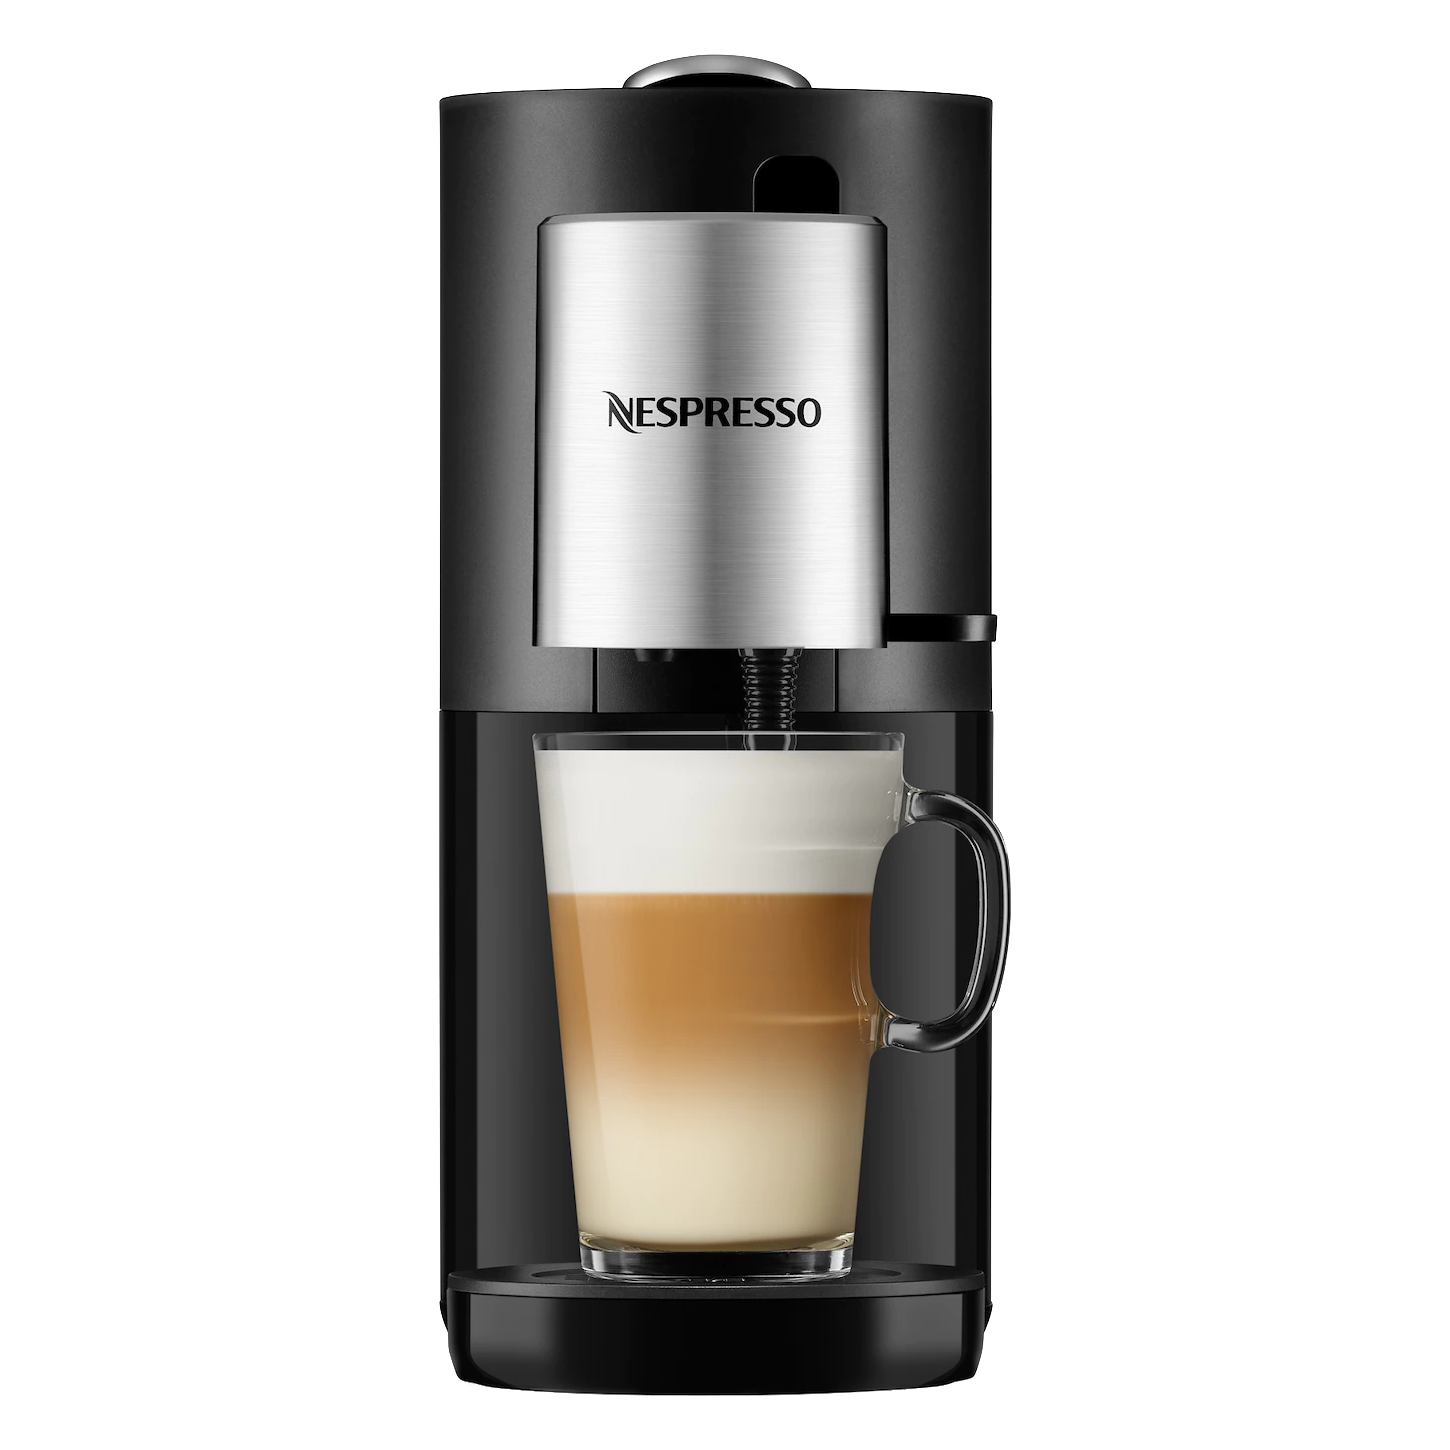 Nespresso Aeroccino XL - How to make a large Freddo Cappuccino 